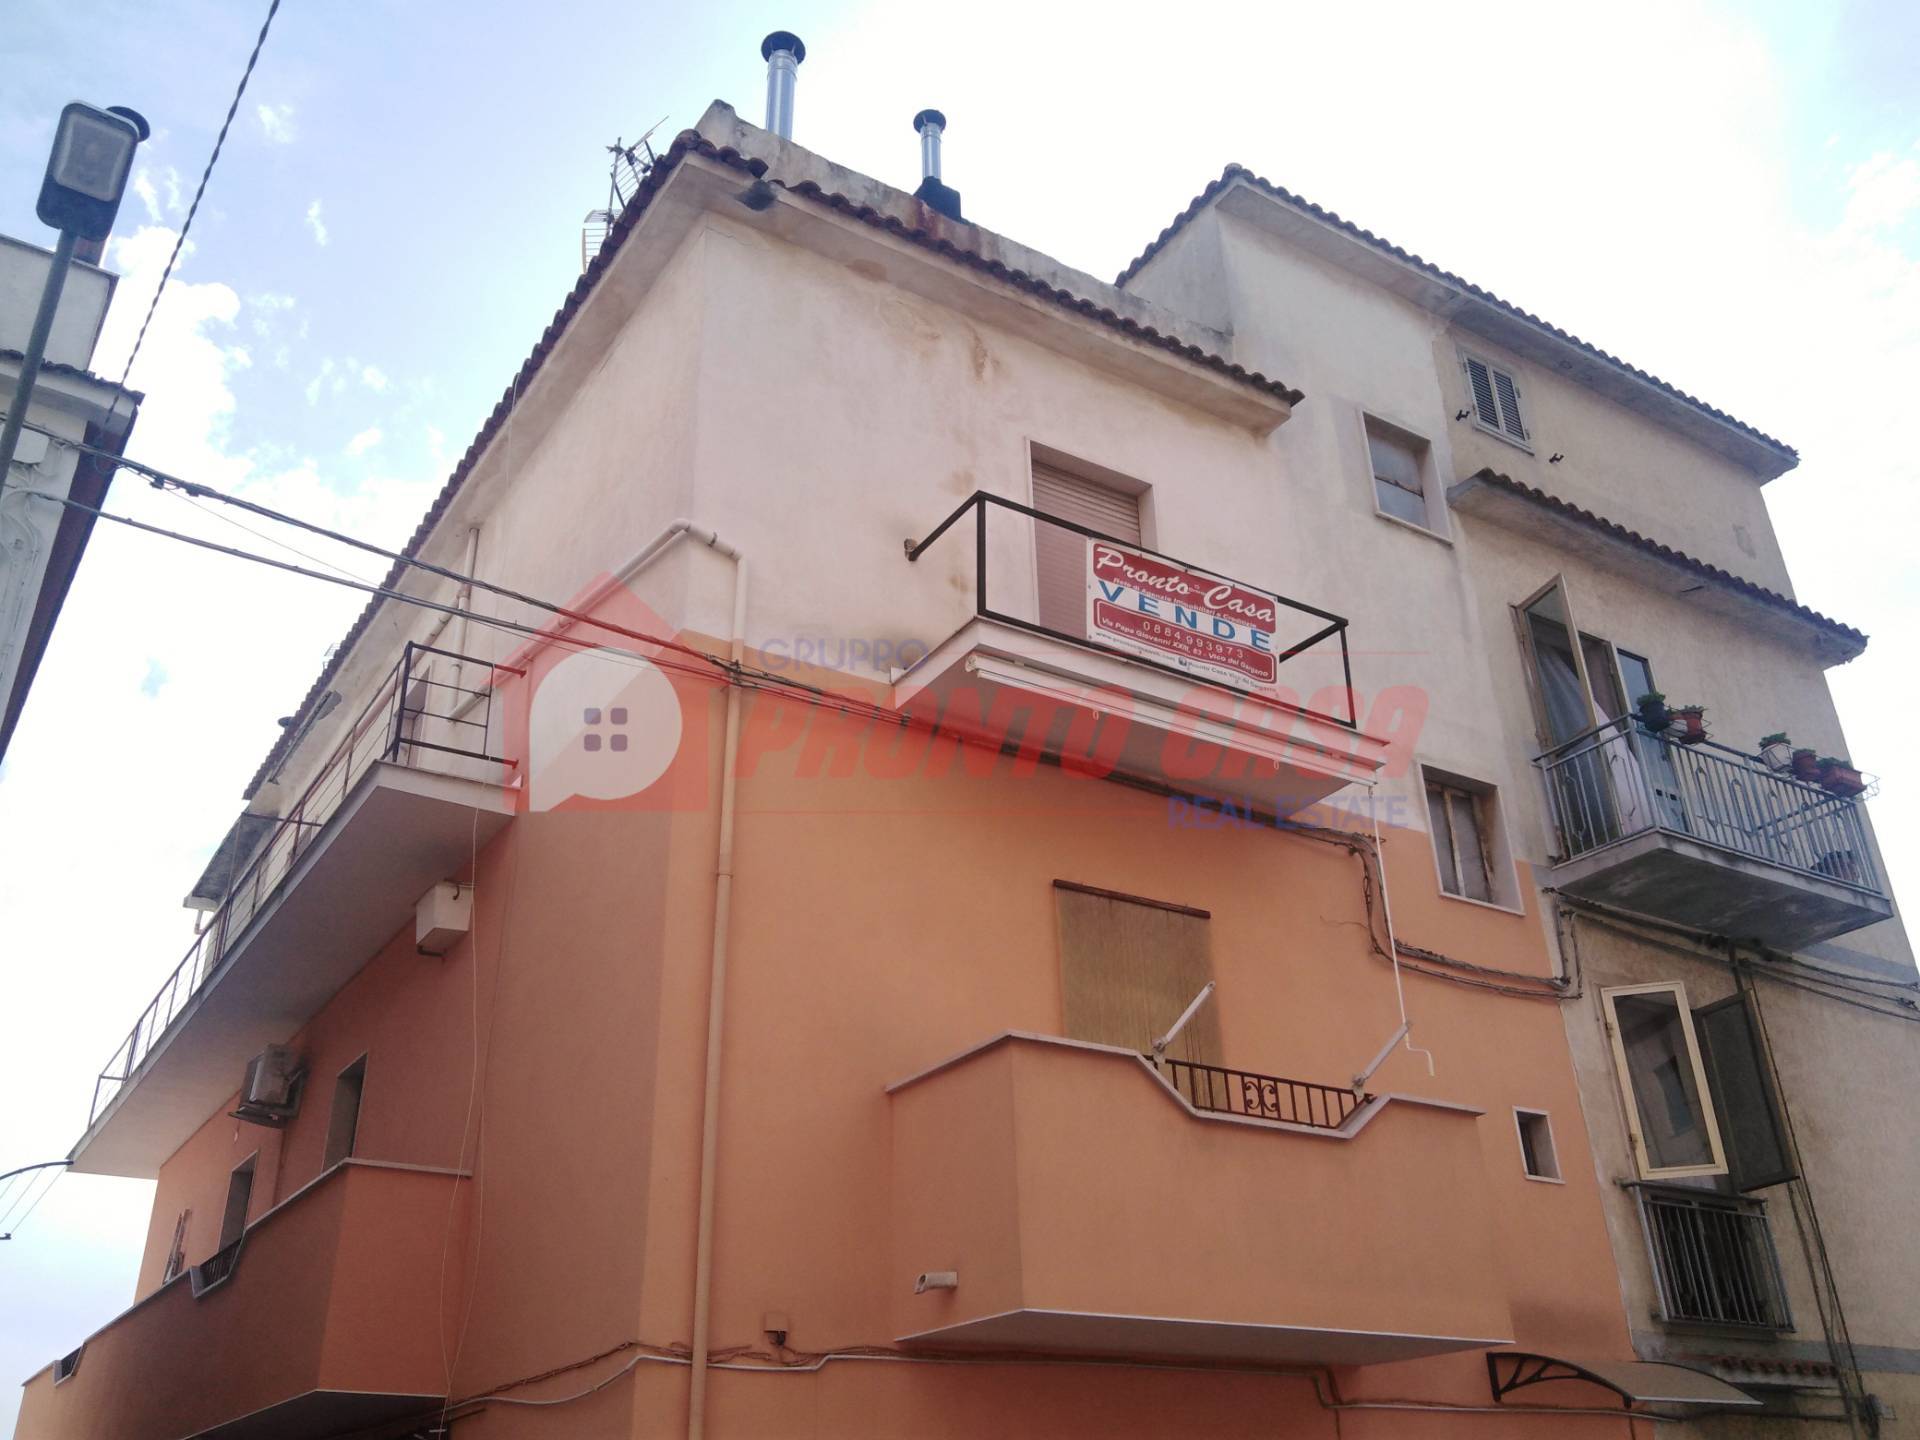 Appartamento in vendita a Ischitella, 5 locali, zona Località: CorsoCesareBattisti, prezzo € 34.000 | PortaleAgenzieImmobiliari.it